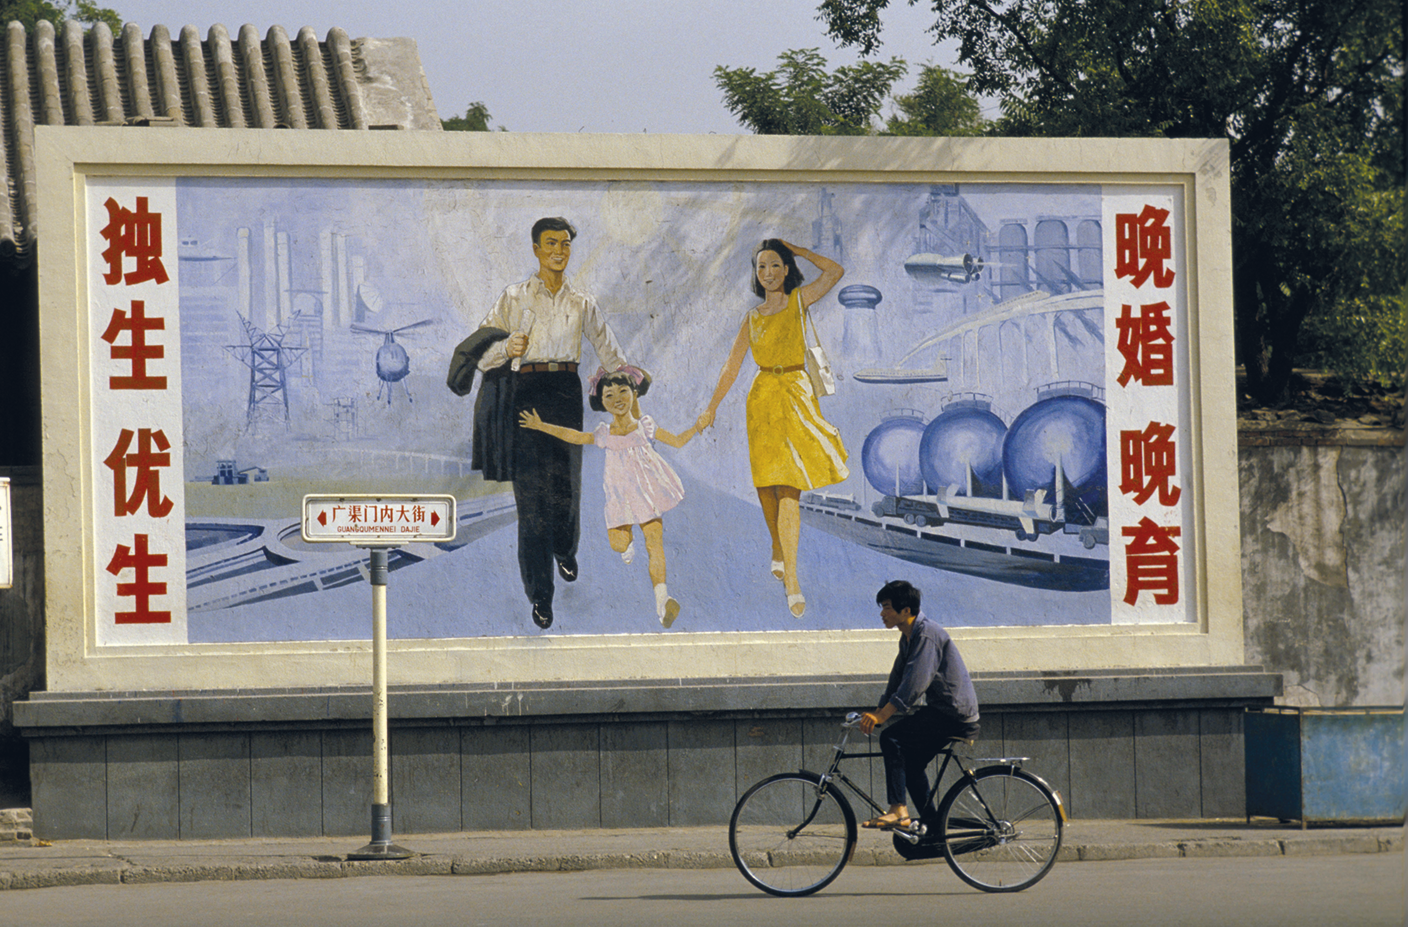 Fotografia. Um homem andando de bicicleta em frente a um painel com a figura de um homem e uma mulher caminhando com uma criança por uma rua, nas laterais há inscrições em chinês.